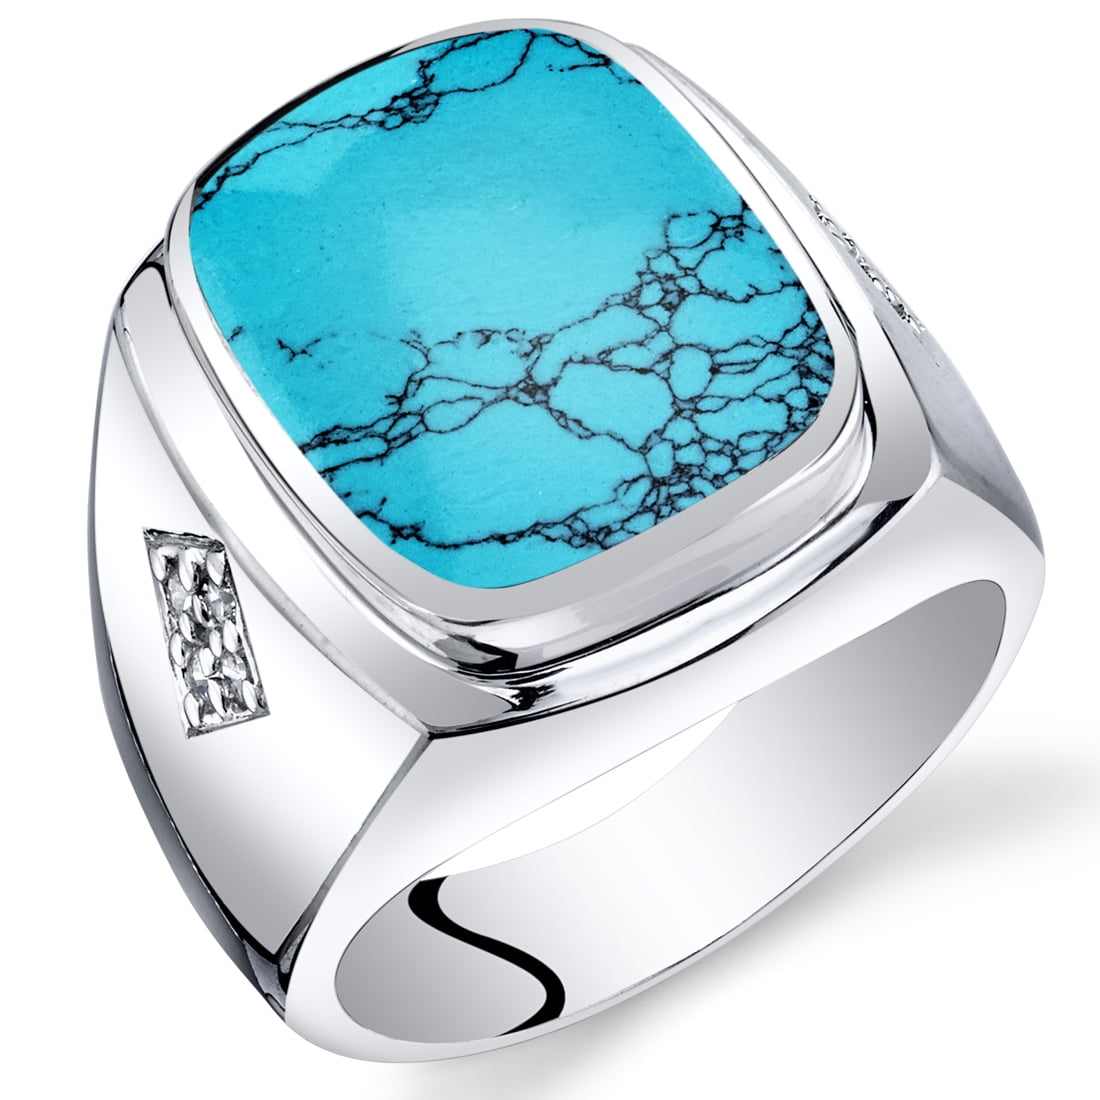 Buy Mens Ring, Firoza Turquoise Ring, Men's Engagement Ring, Men's Gemstone  Ring, Men's Silver Ring, Men's Anniversary Ring, Signet Ring for Him Online  in India… | Mens gemstone rings, Engagement rings for